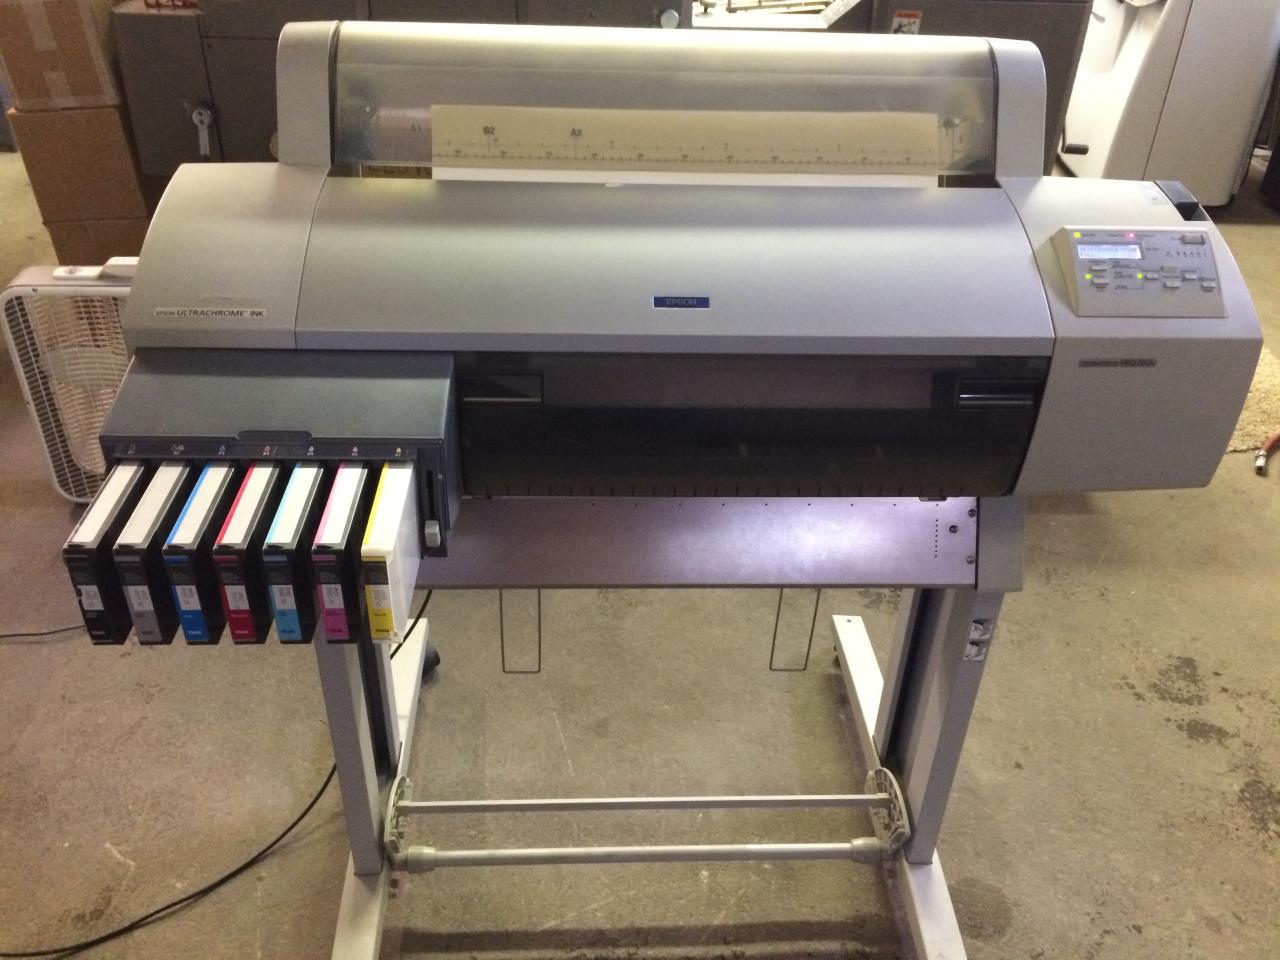 Epson Stylus Pro 7600 Printer